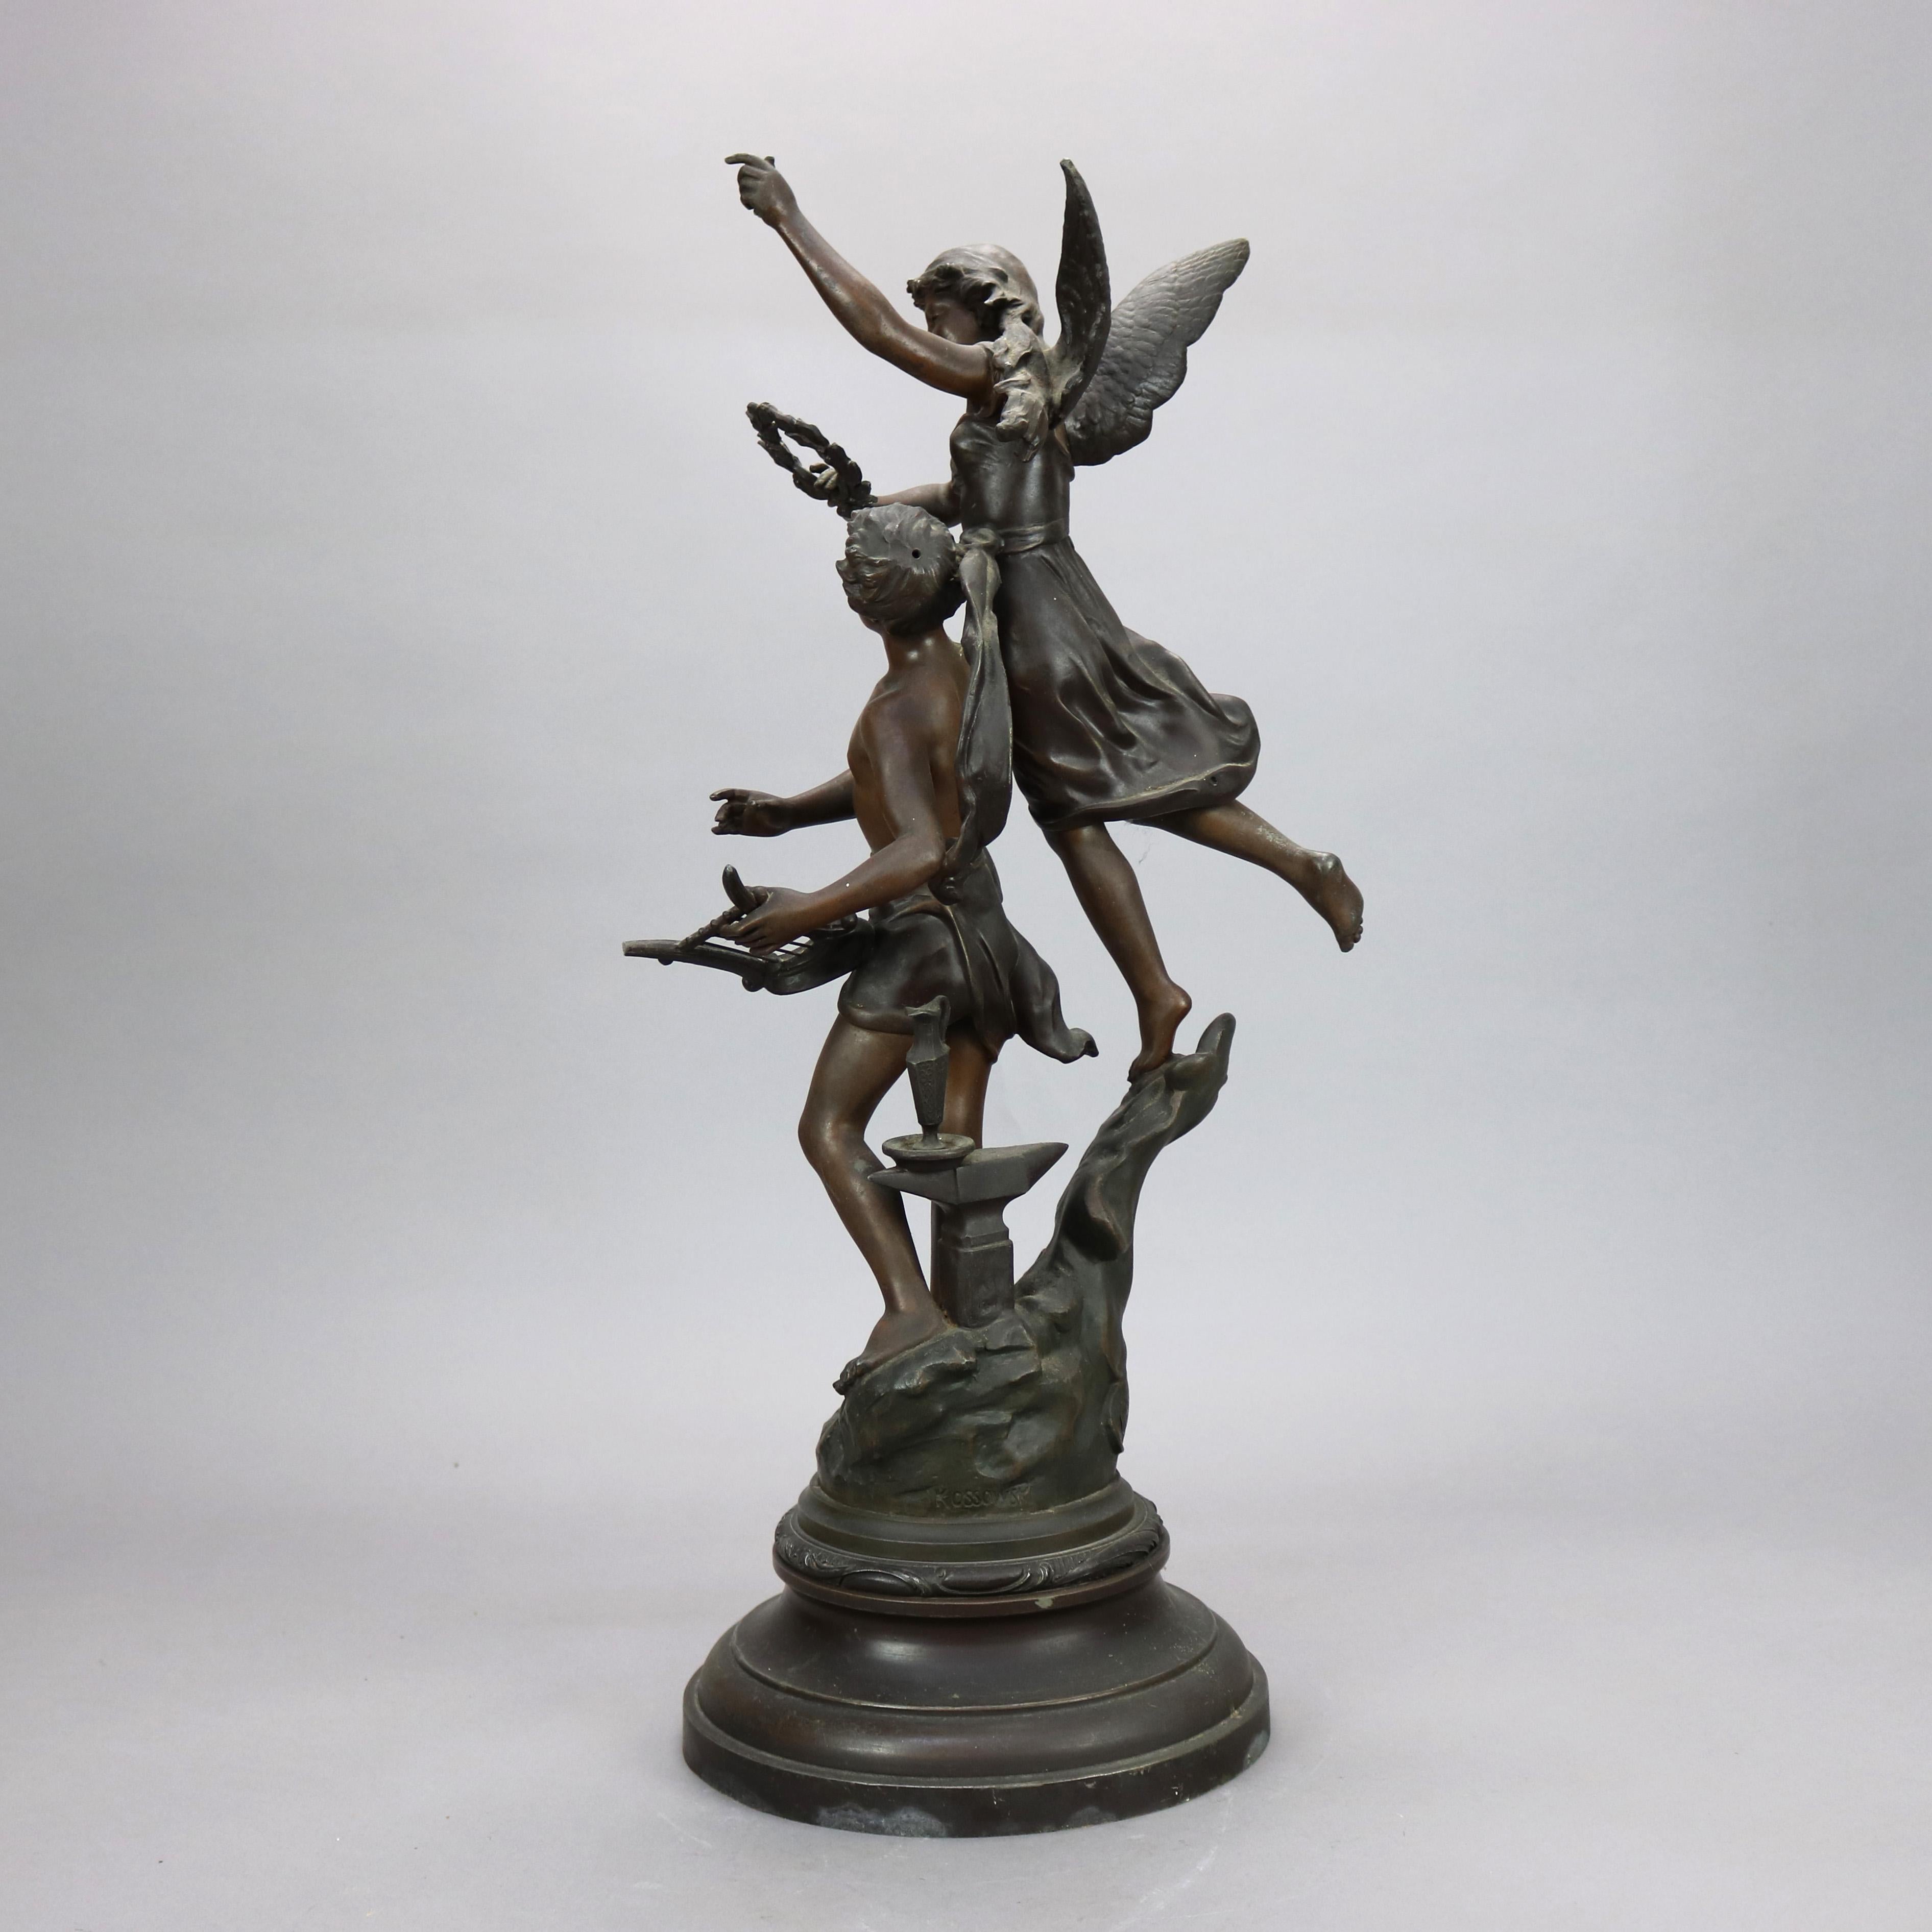 Cast Antique French Kossowski Bronzed Metal Sculpture “Couronnement des Arts”, c1890